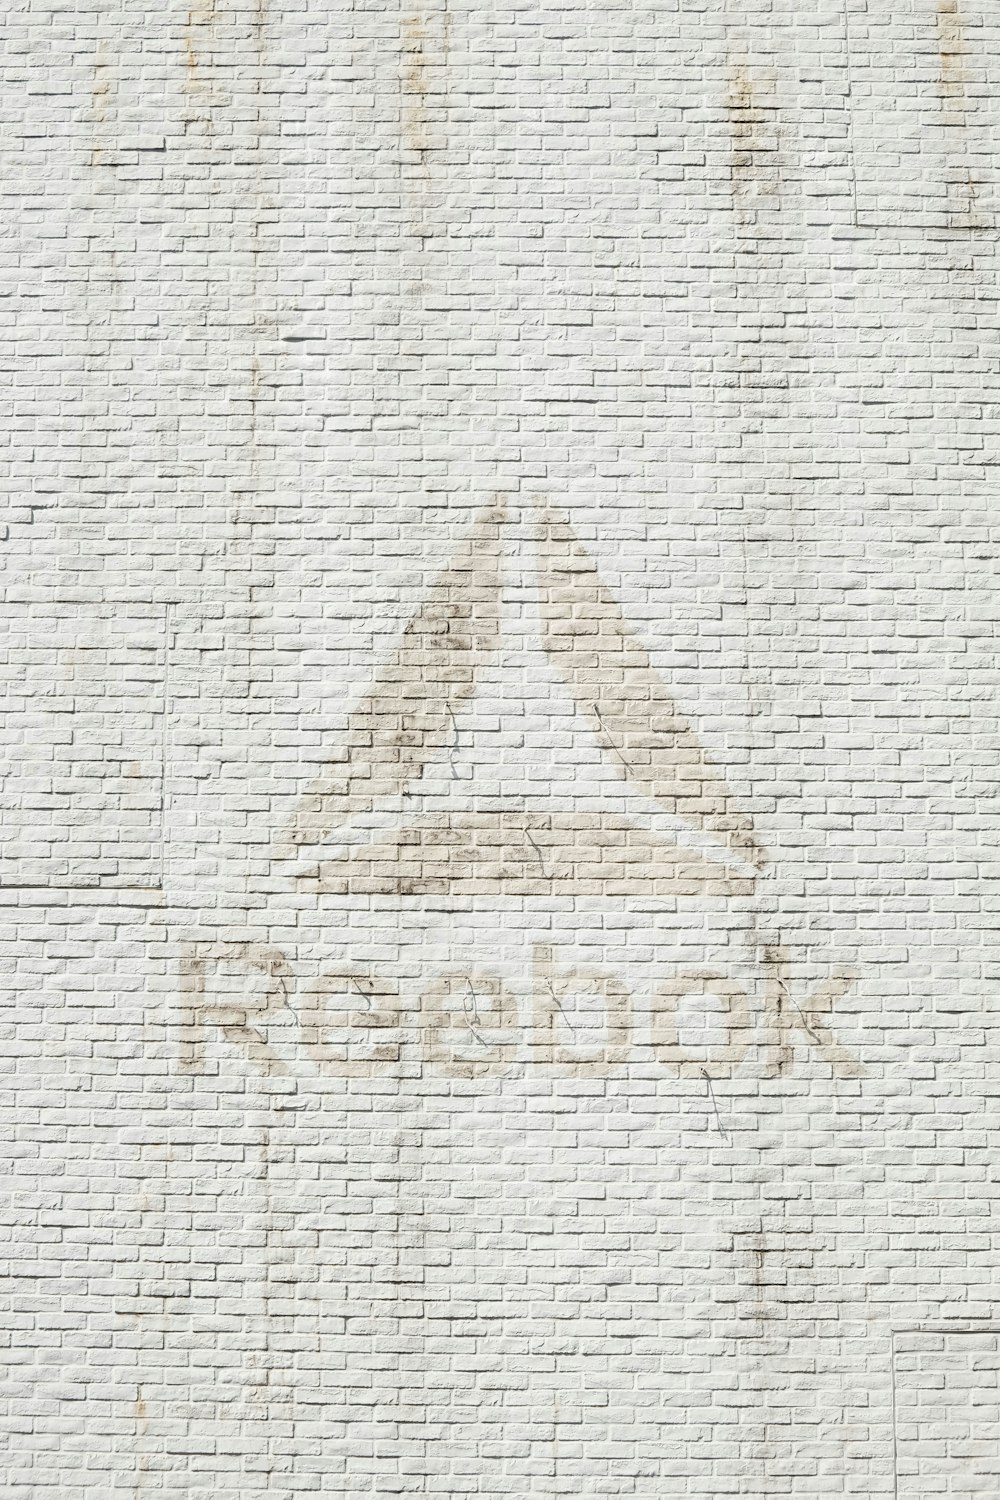 Nahaufnahme des Reebok Logos an der Wand